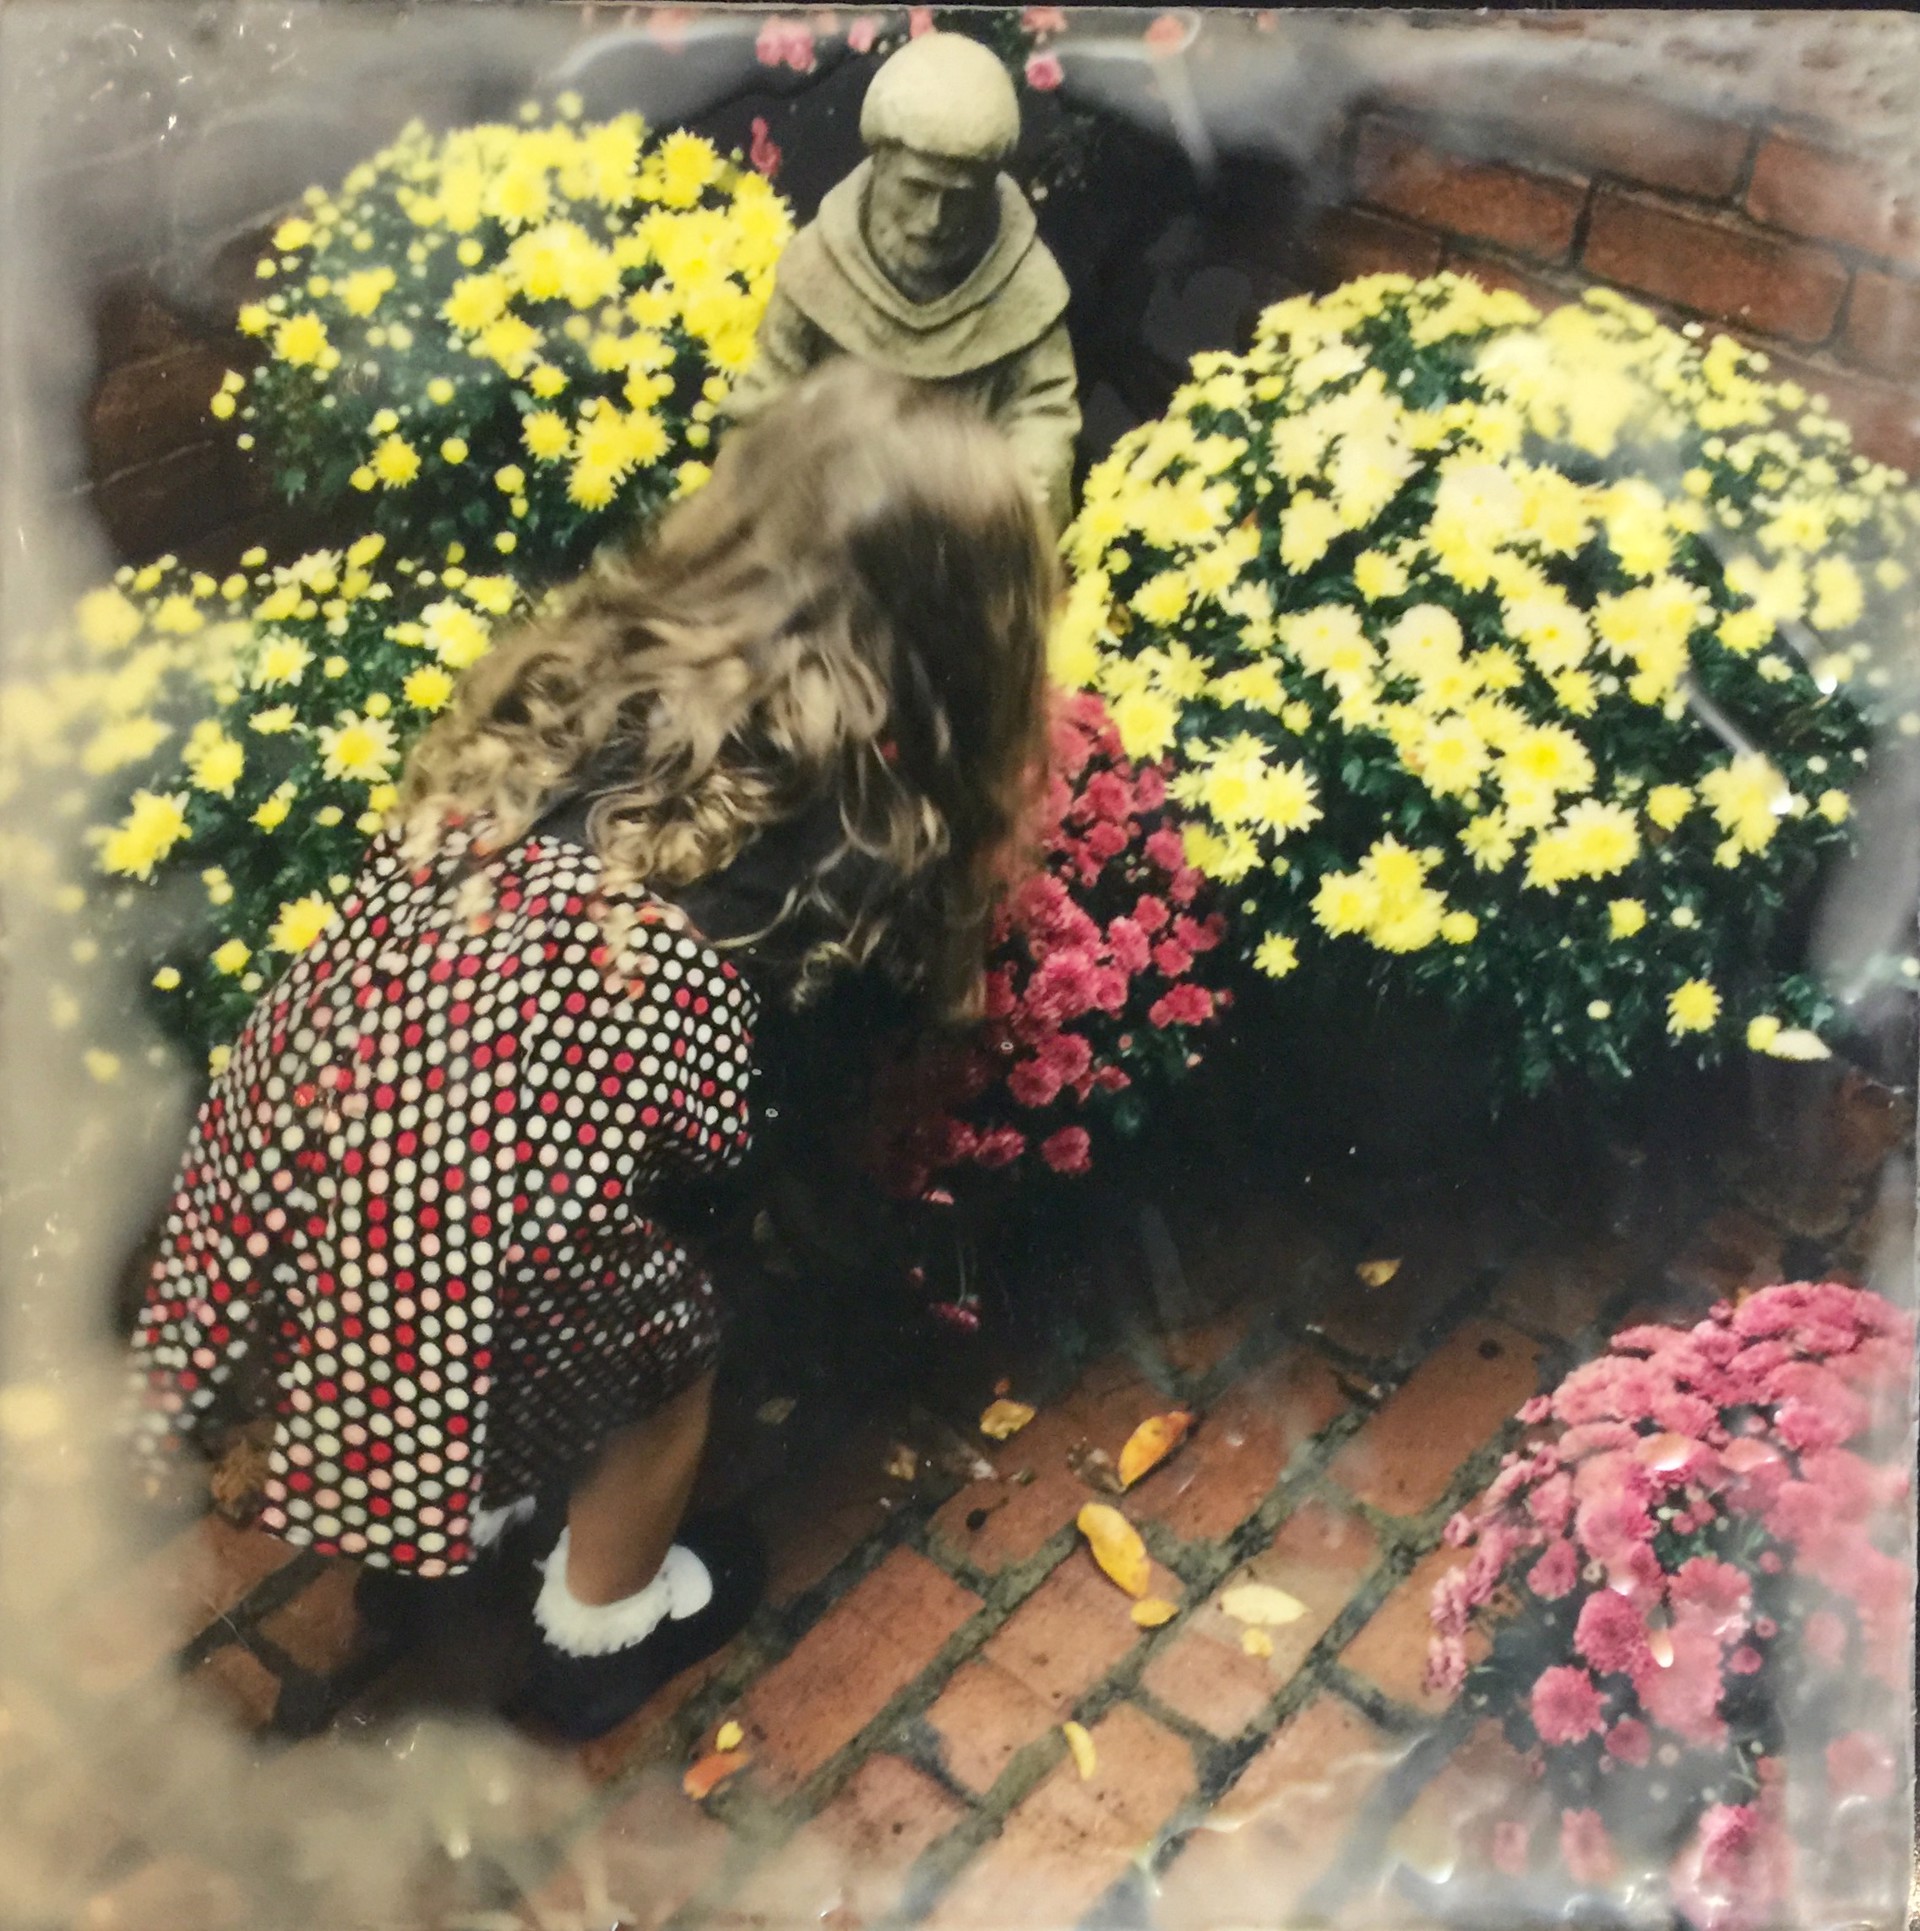 Sophia and the Chrysanthemums by Judie Jacobs